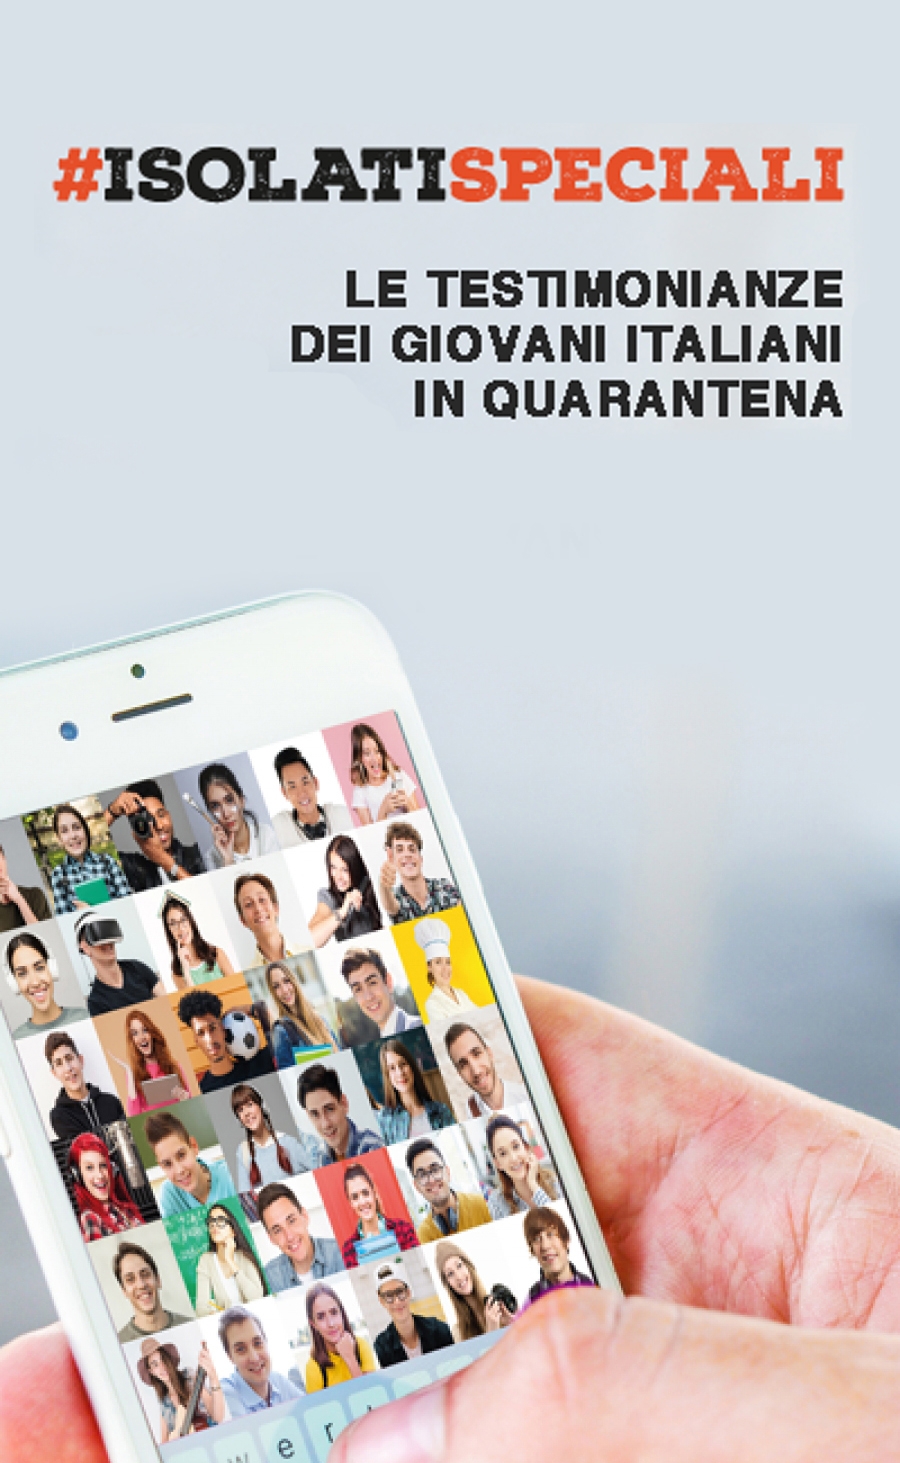 #Isolatispeciali: le testimonianze dei giovani italiani in quarantena